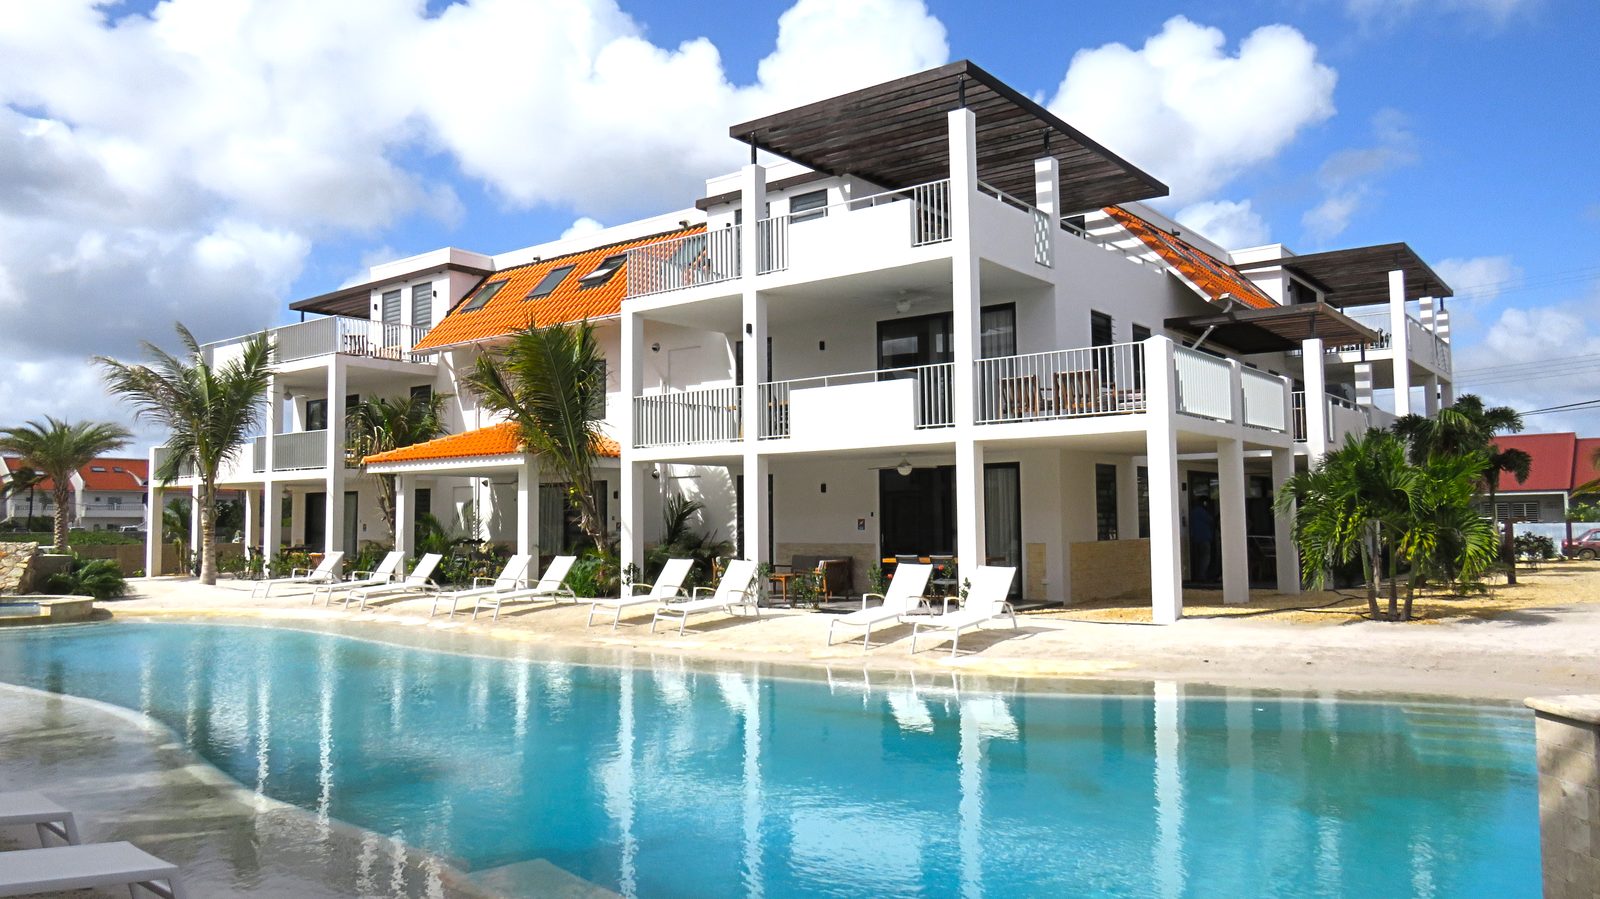 Suchen Sie nach einer Aufenthaltsmöglichkeit auf Bonaire? Dann entscheiden Sie sich für das Resort Bonaire. Ein neues Luxus-Resort mit Appartements, die alles bieten, was Sie brauchen.